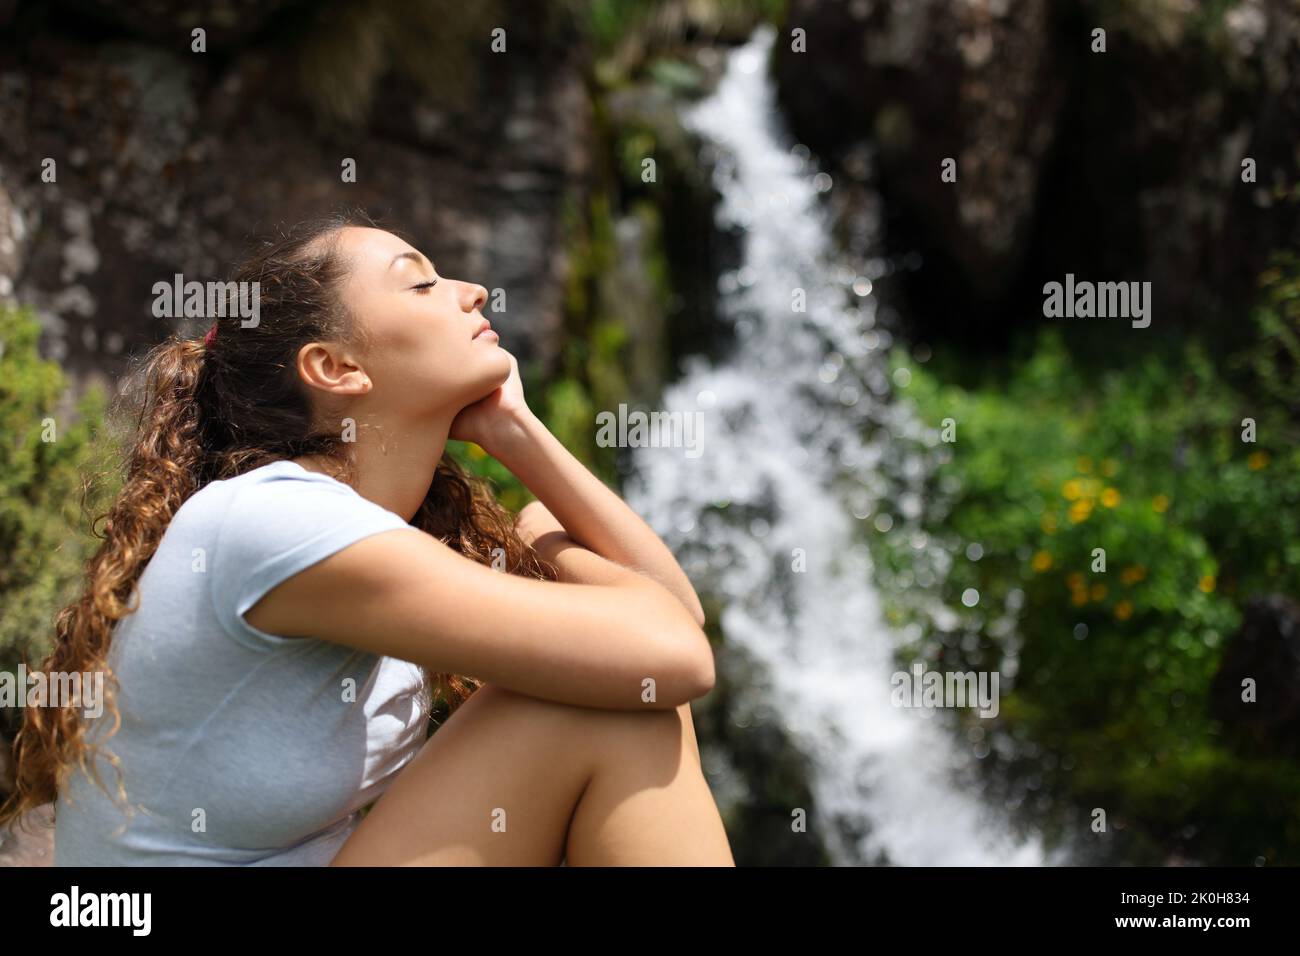 Seitenansicht Porträt einer Frau, die sich in einem kleinen Wasserfall im Berg entspannt Stockfoto